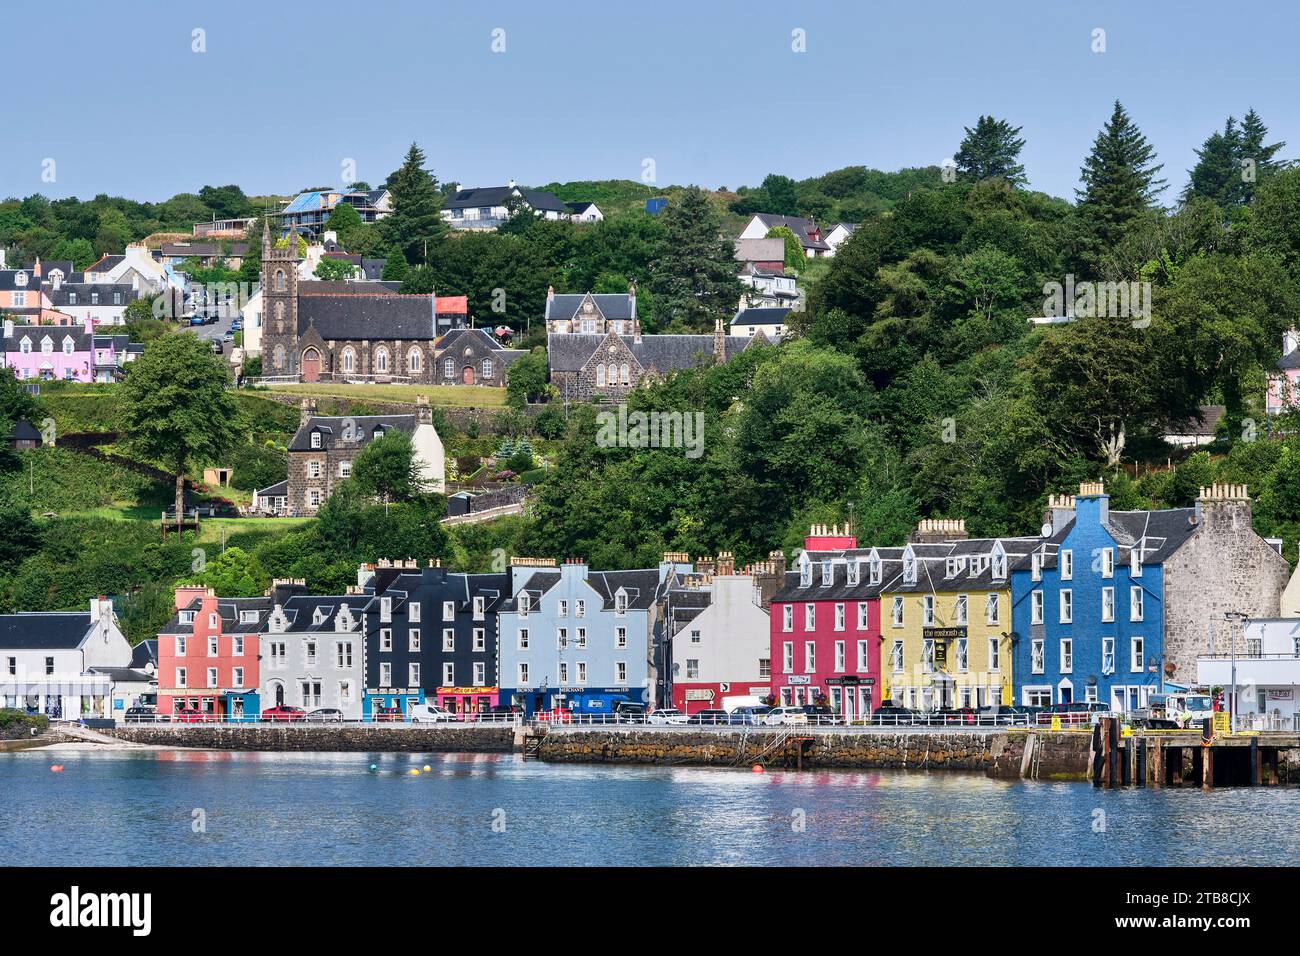 Écosse, Hébrides intérieures, île de Mull : village de Tobermory. Façades de bâtiments colorés le long du front de mer Banque D'Images